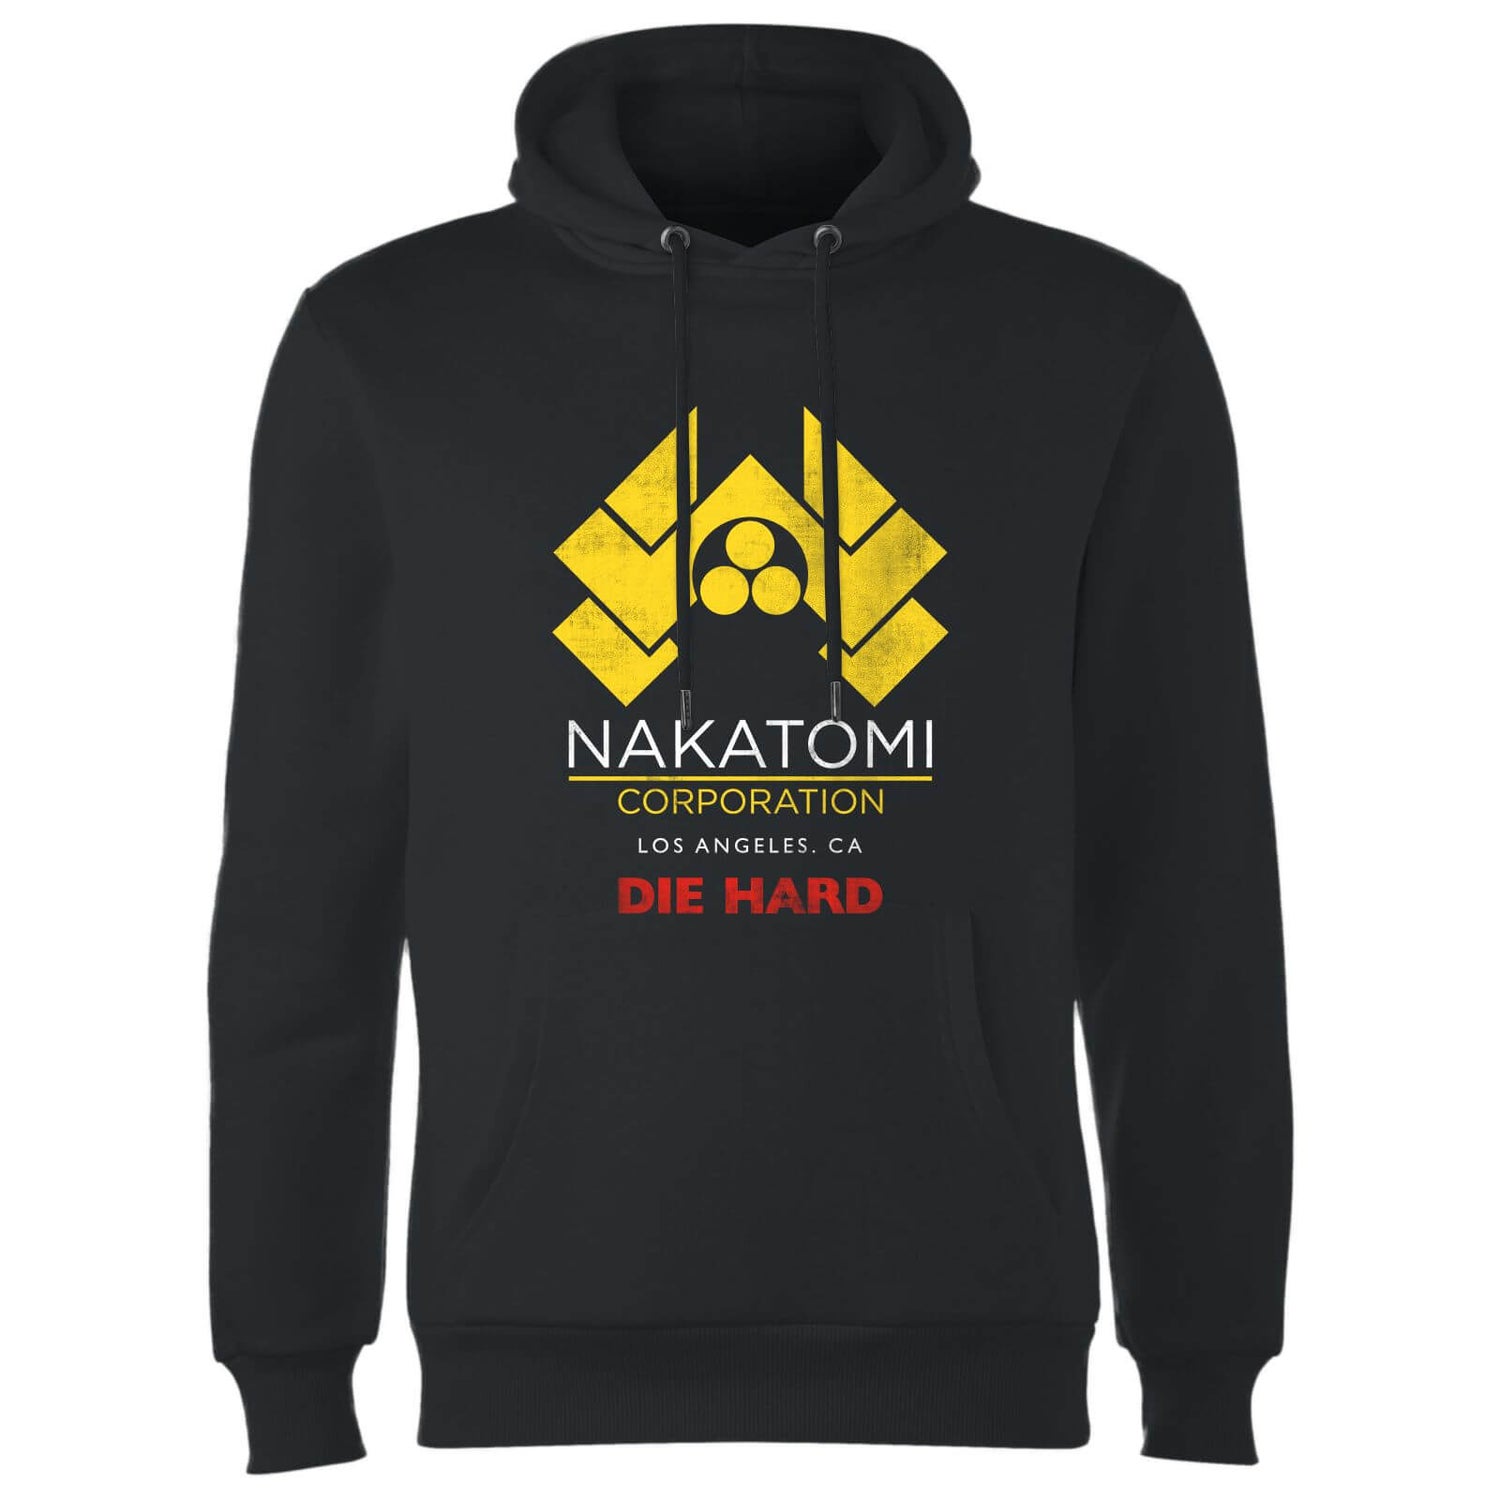 Die Hard Nakatomi Corp Hoodie - Black